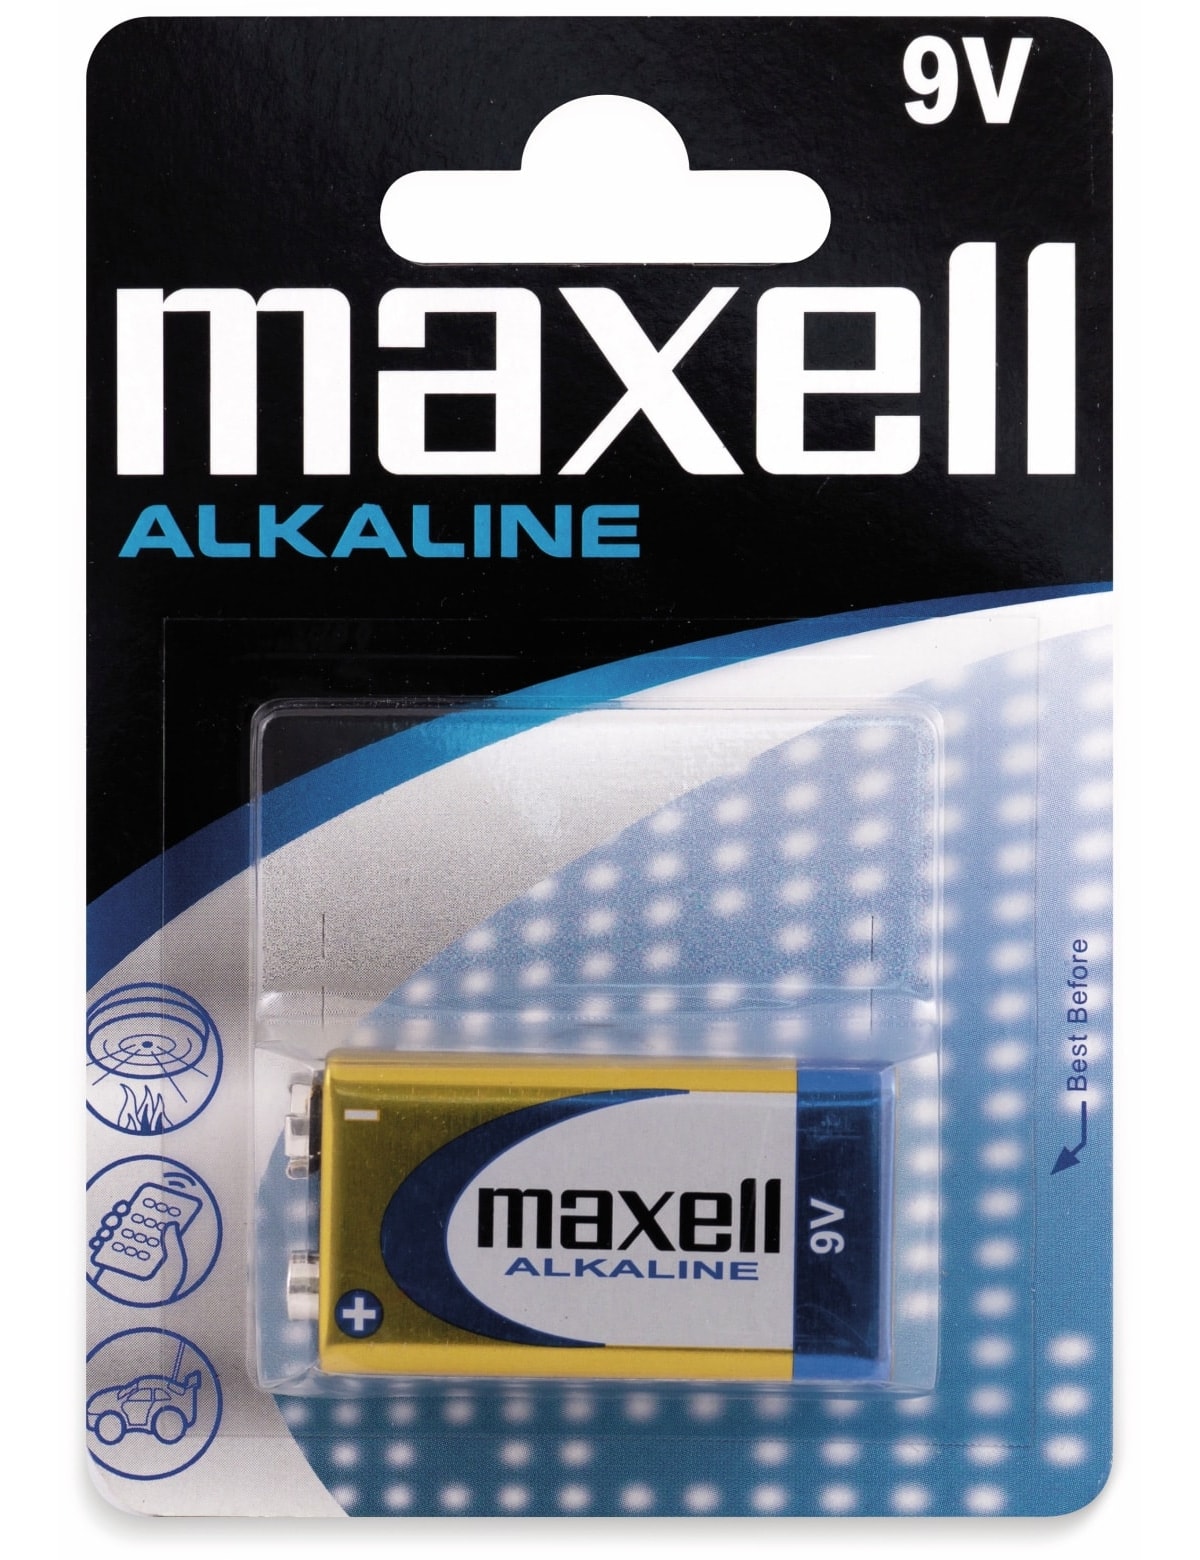 MAXELL 9V-Blockbatterie Alkaline, 6LR61, 1 Stück